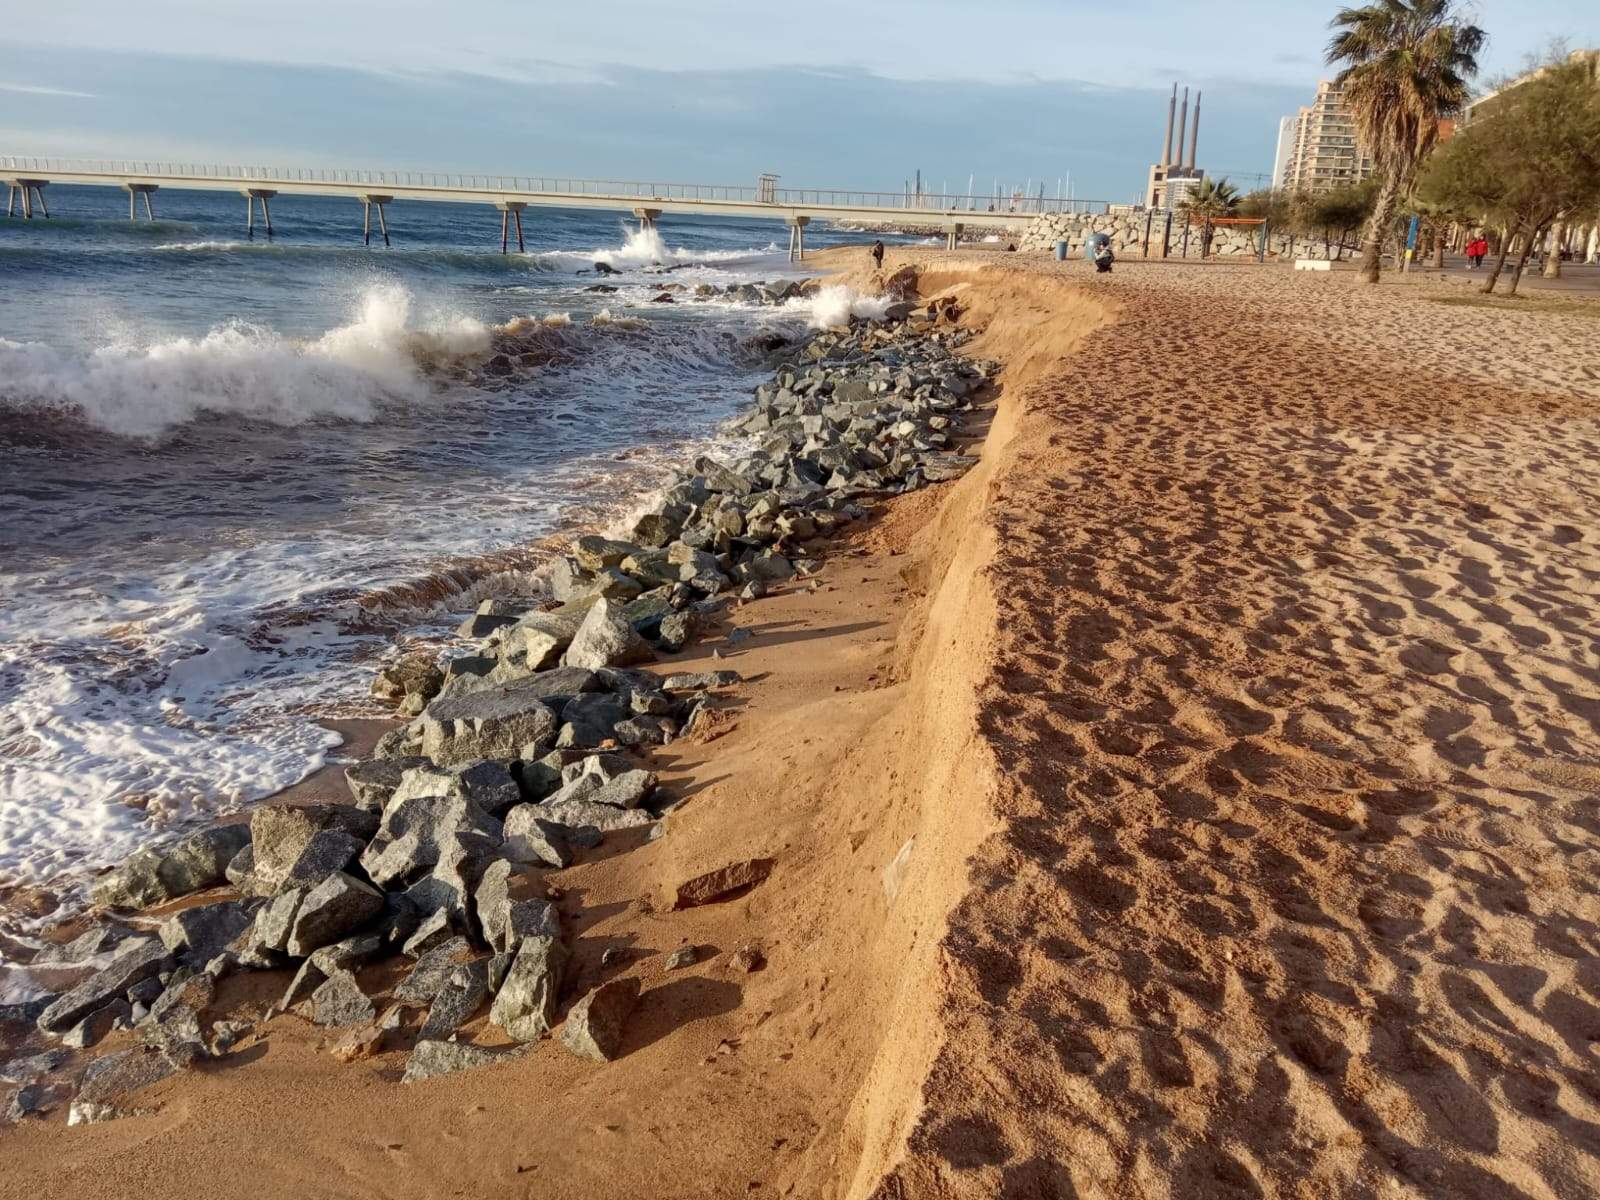 El cost de no tenir platges: famílies a l'atur i l'economia del litoral tocada